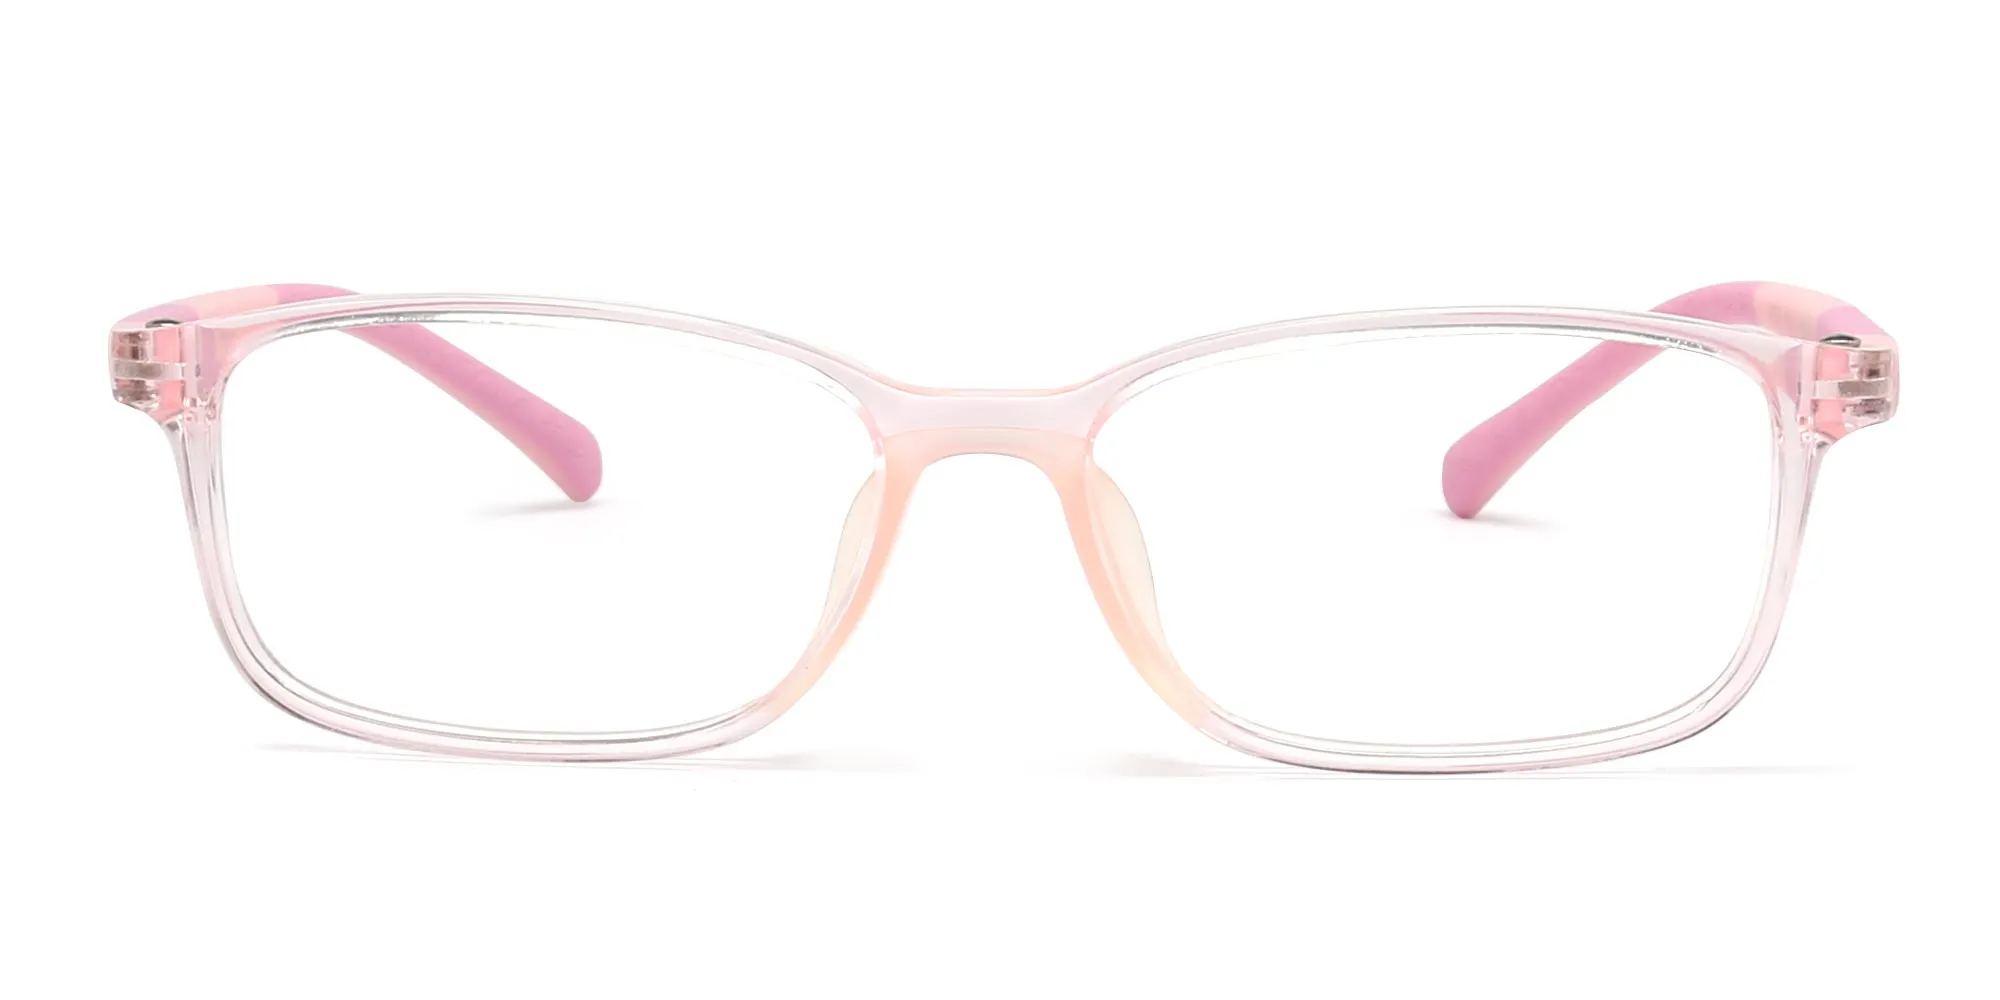 children's lenses glasses